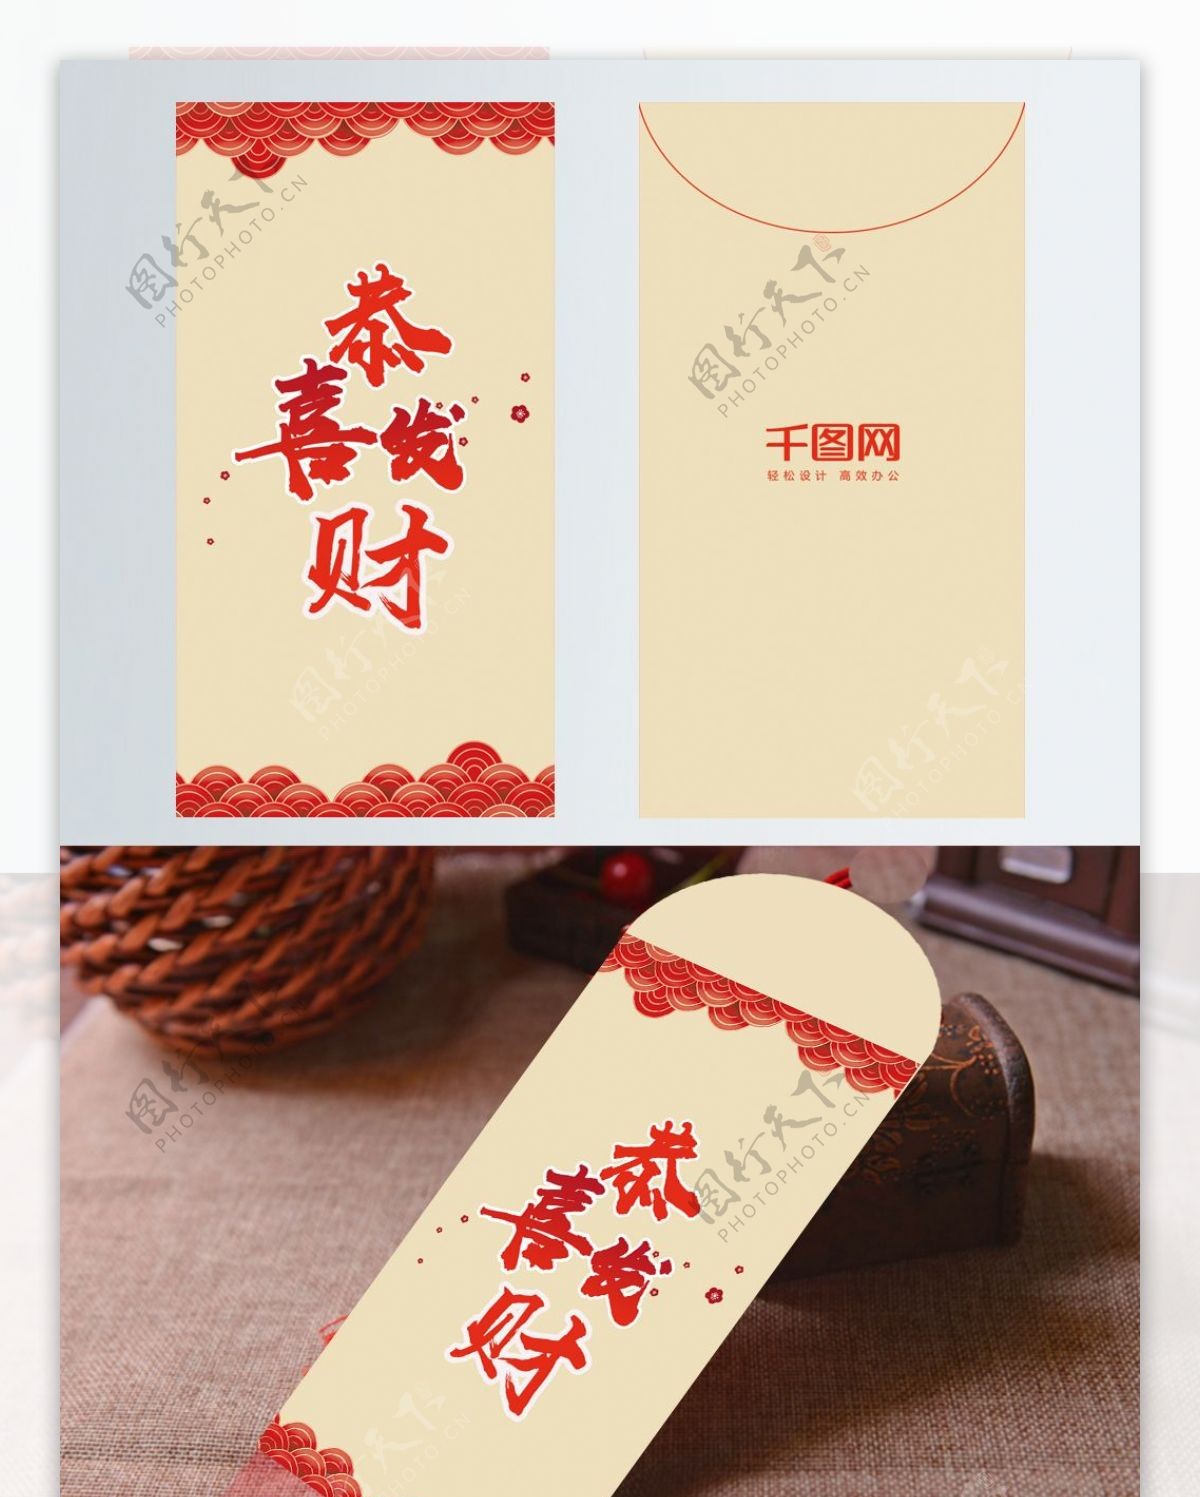 简约大气中国风新年红包设计模板